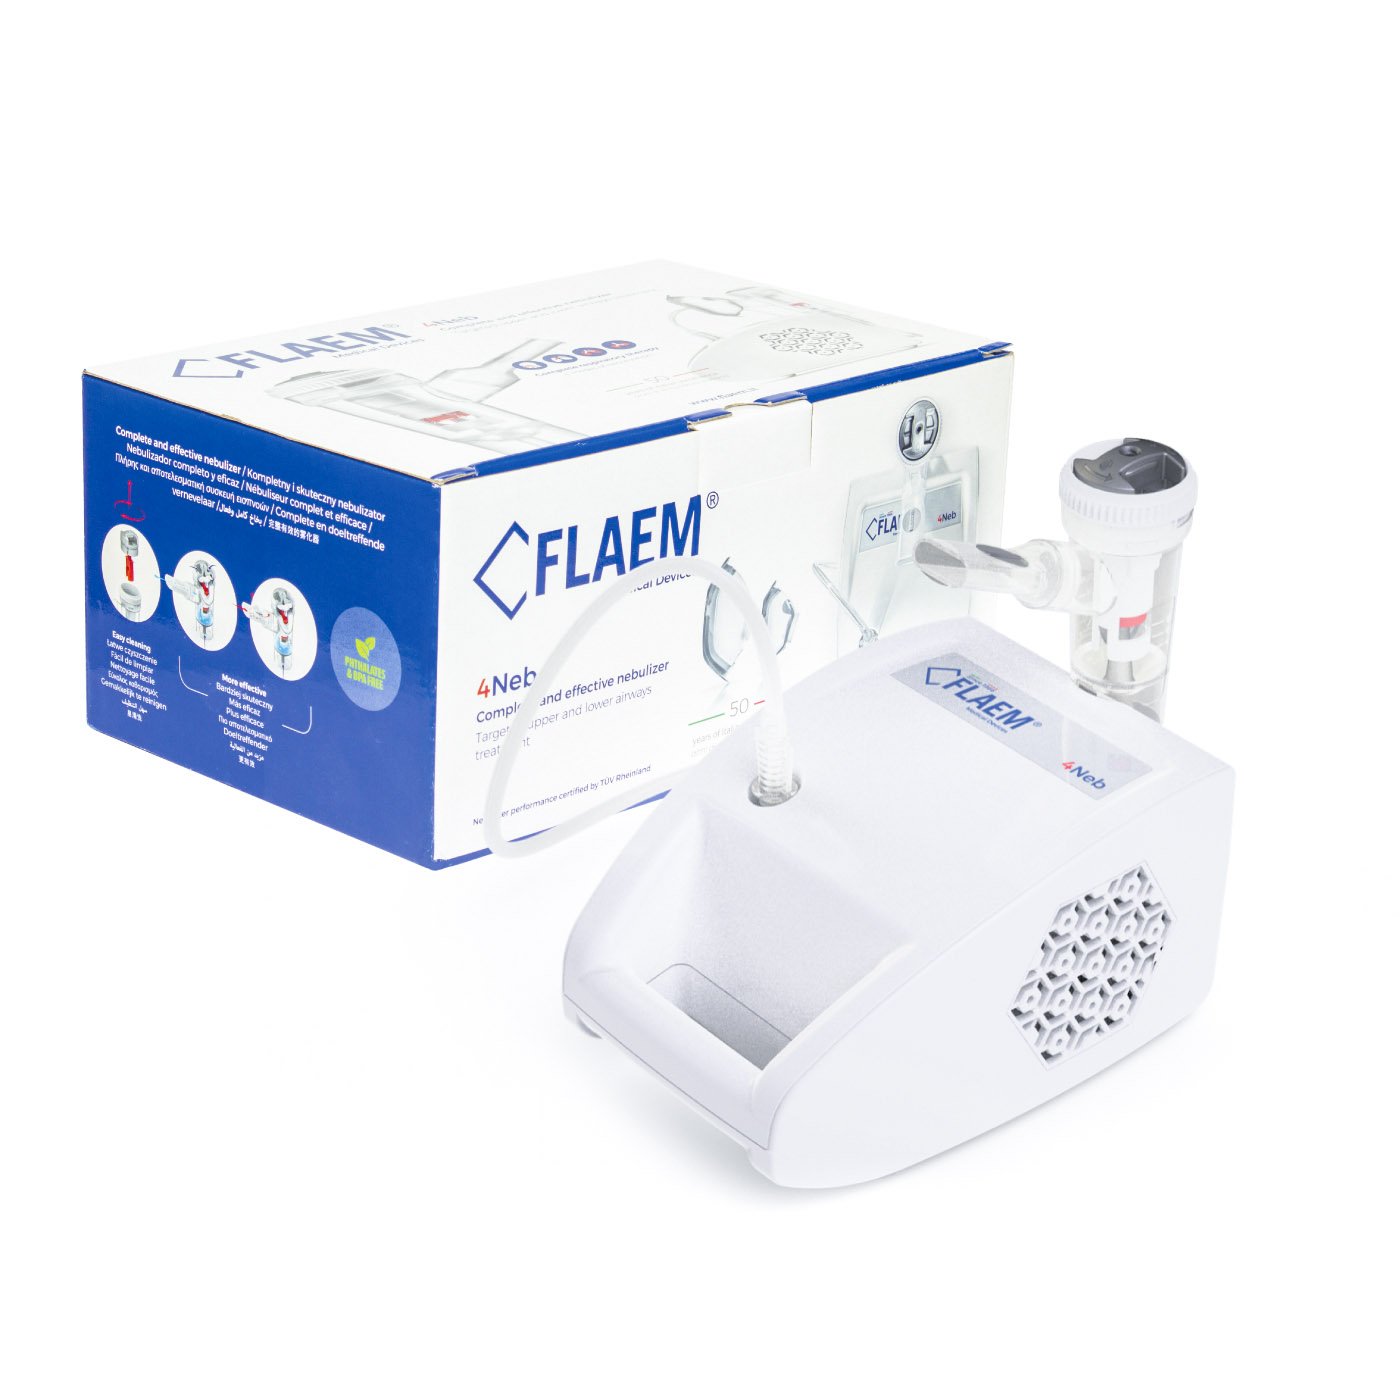 Inhalator pneumatyczno-tłokowy FLAEM 4Neb